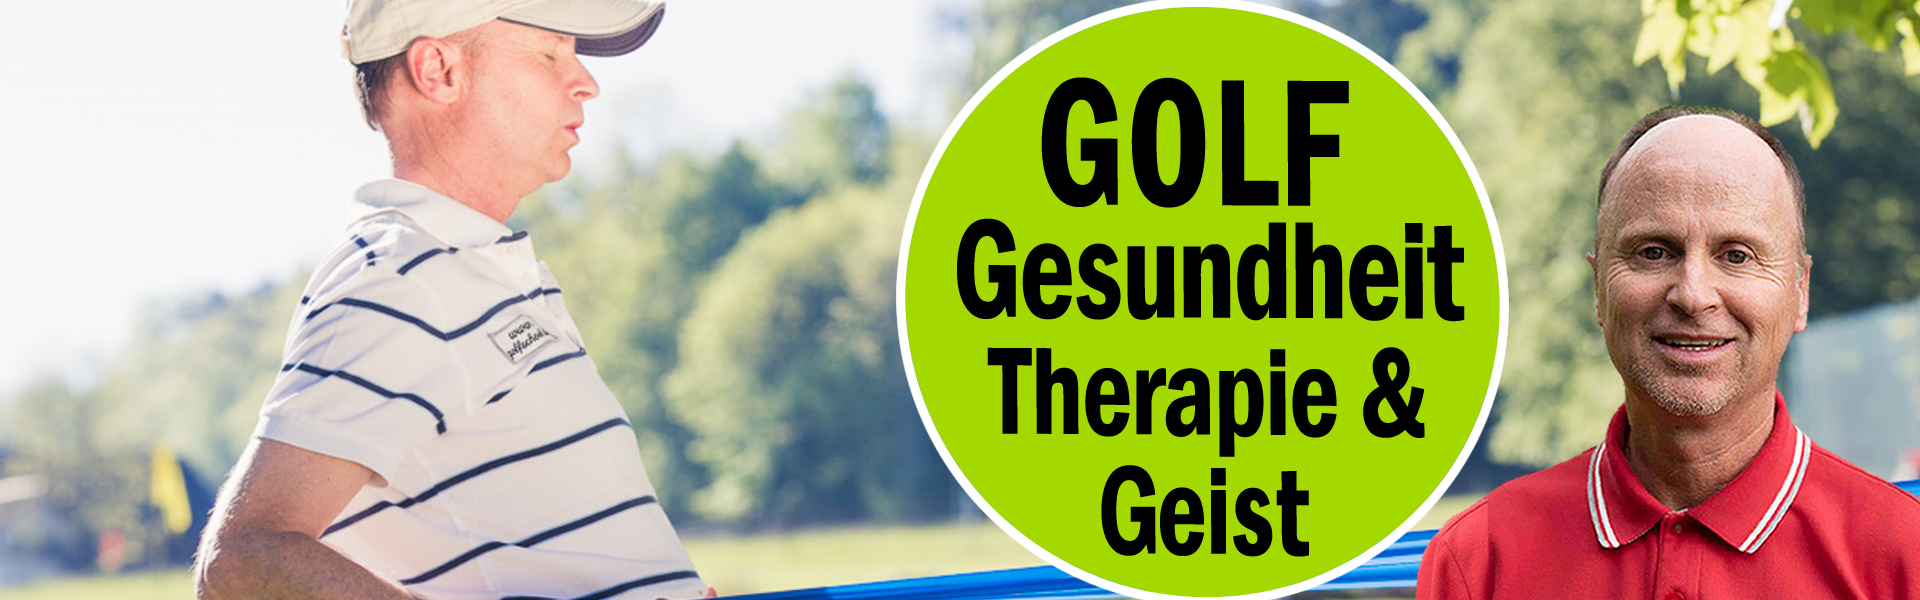 Golf-Gesundheit-Zuerich-Golf-Therapie-Geist-Seele-Golflehrer-Pro-02